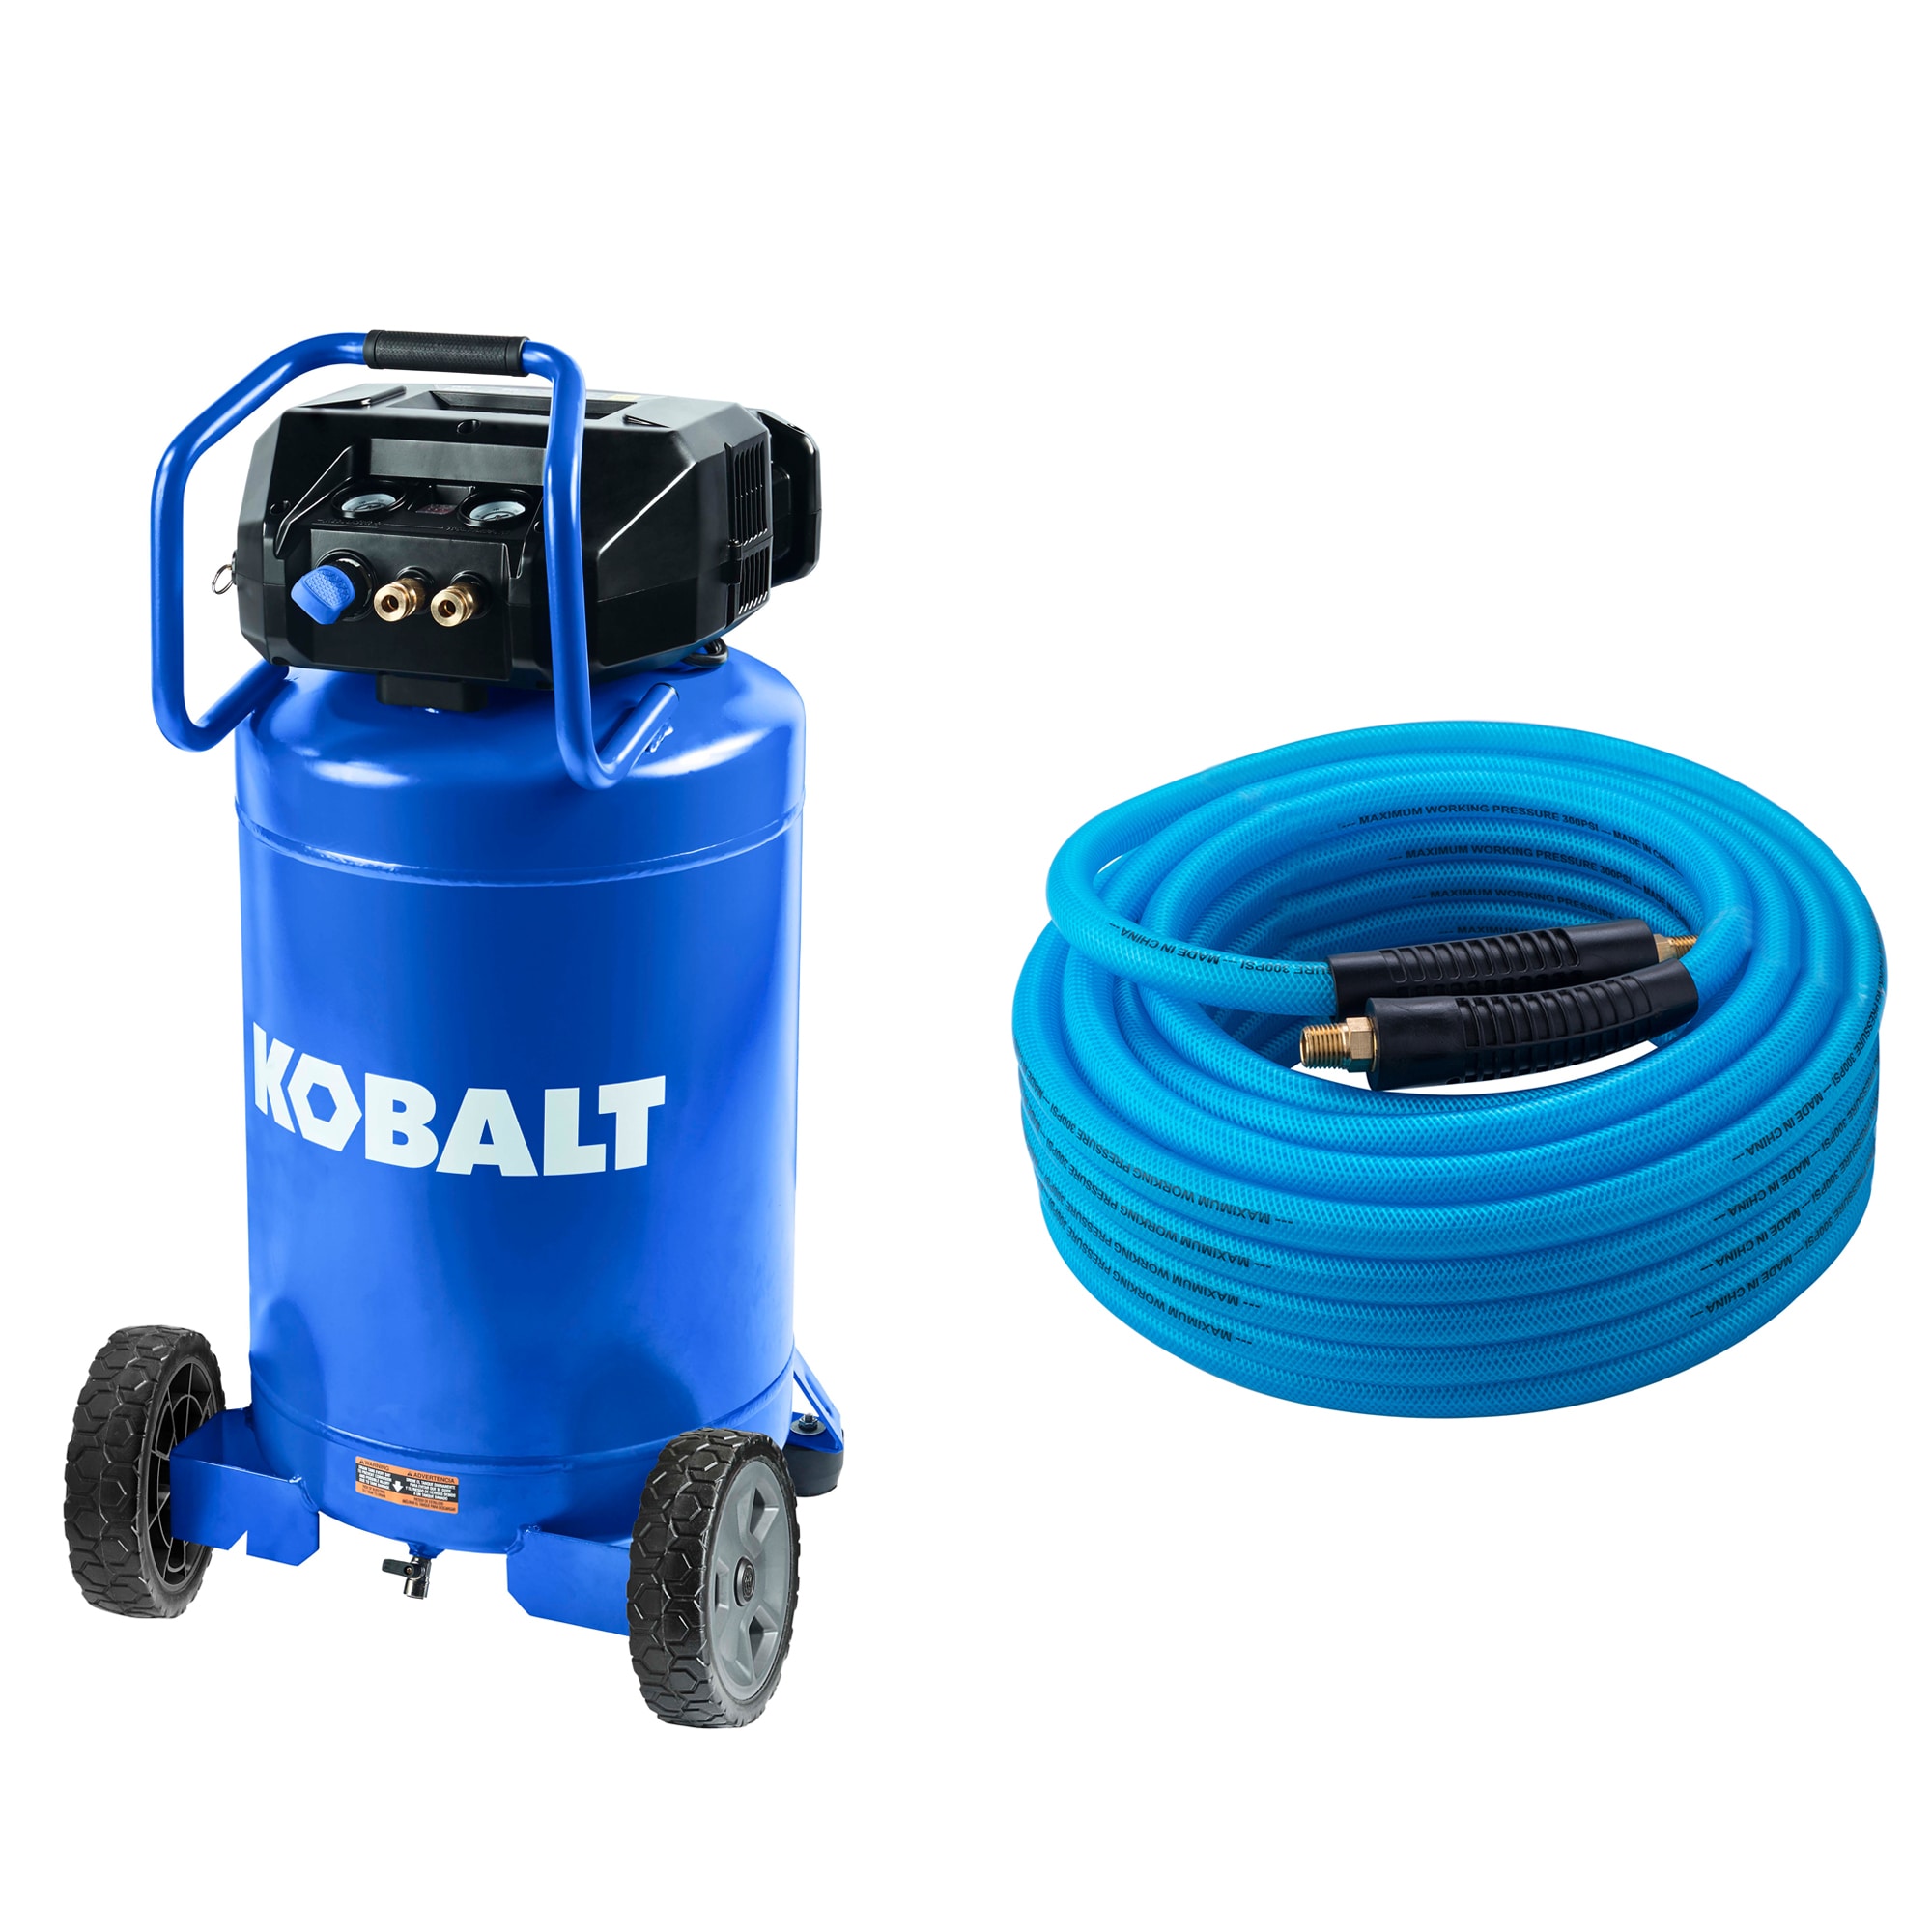 Kobalt 20-Gal Compressor and 3/8-IN x 50-FT Triple Hybrid Hose